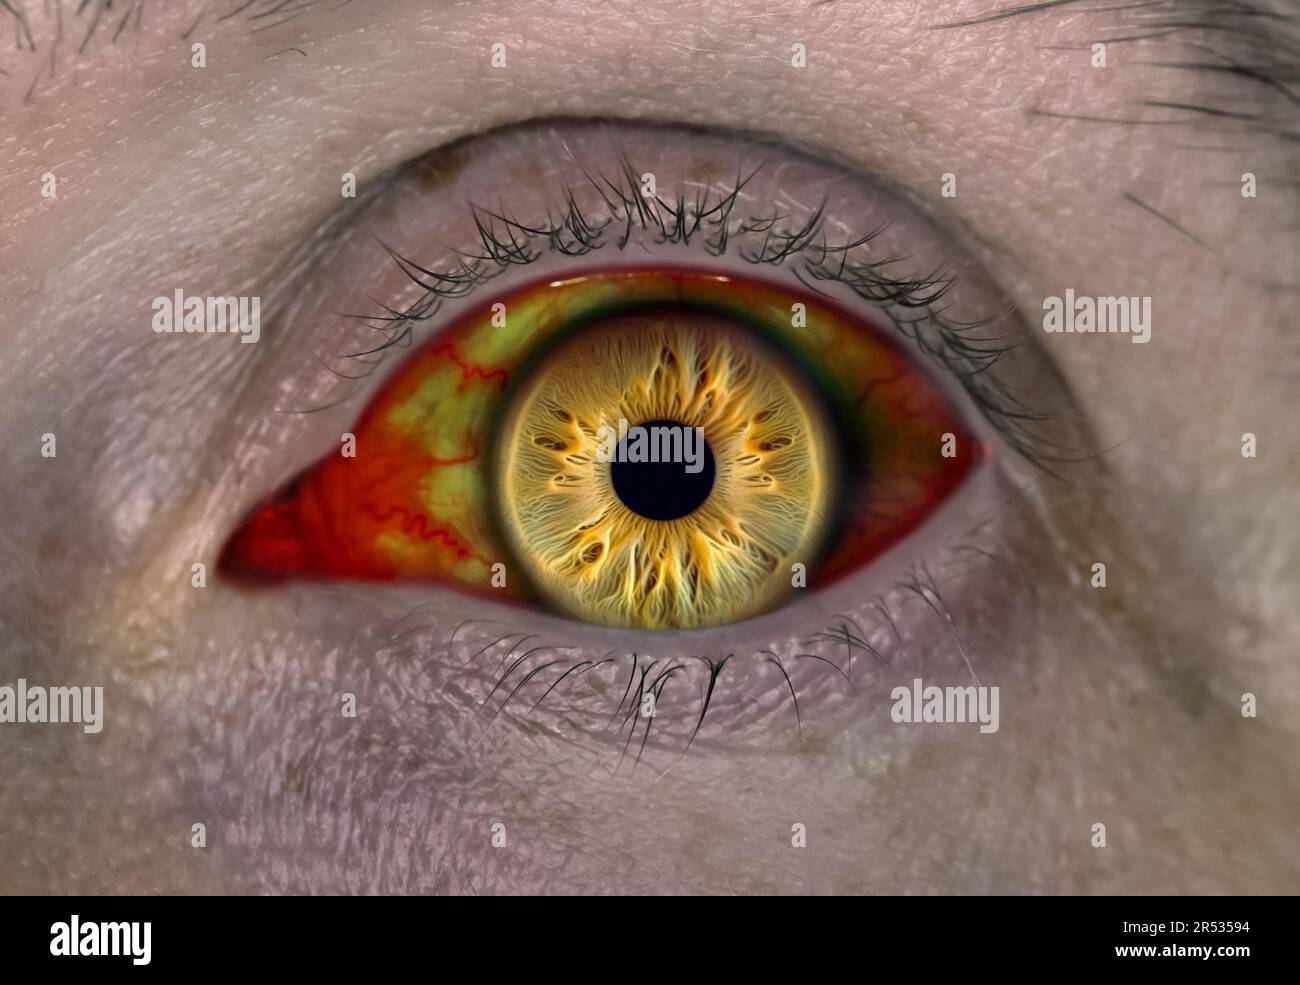 Großaugenvampir oder Zombie. Das Auge der lebenden Toten. Das Auge einer Person, die mit dem Zombie-Virus infiziert ist. Stockfoto